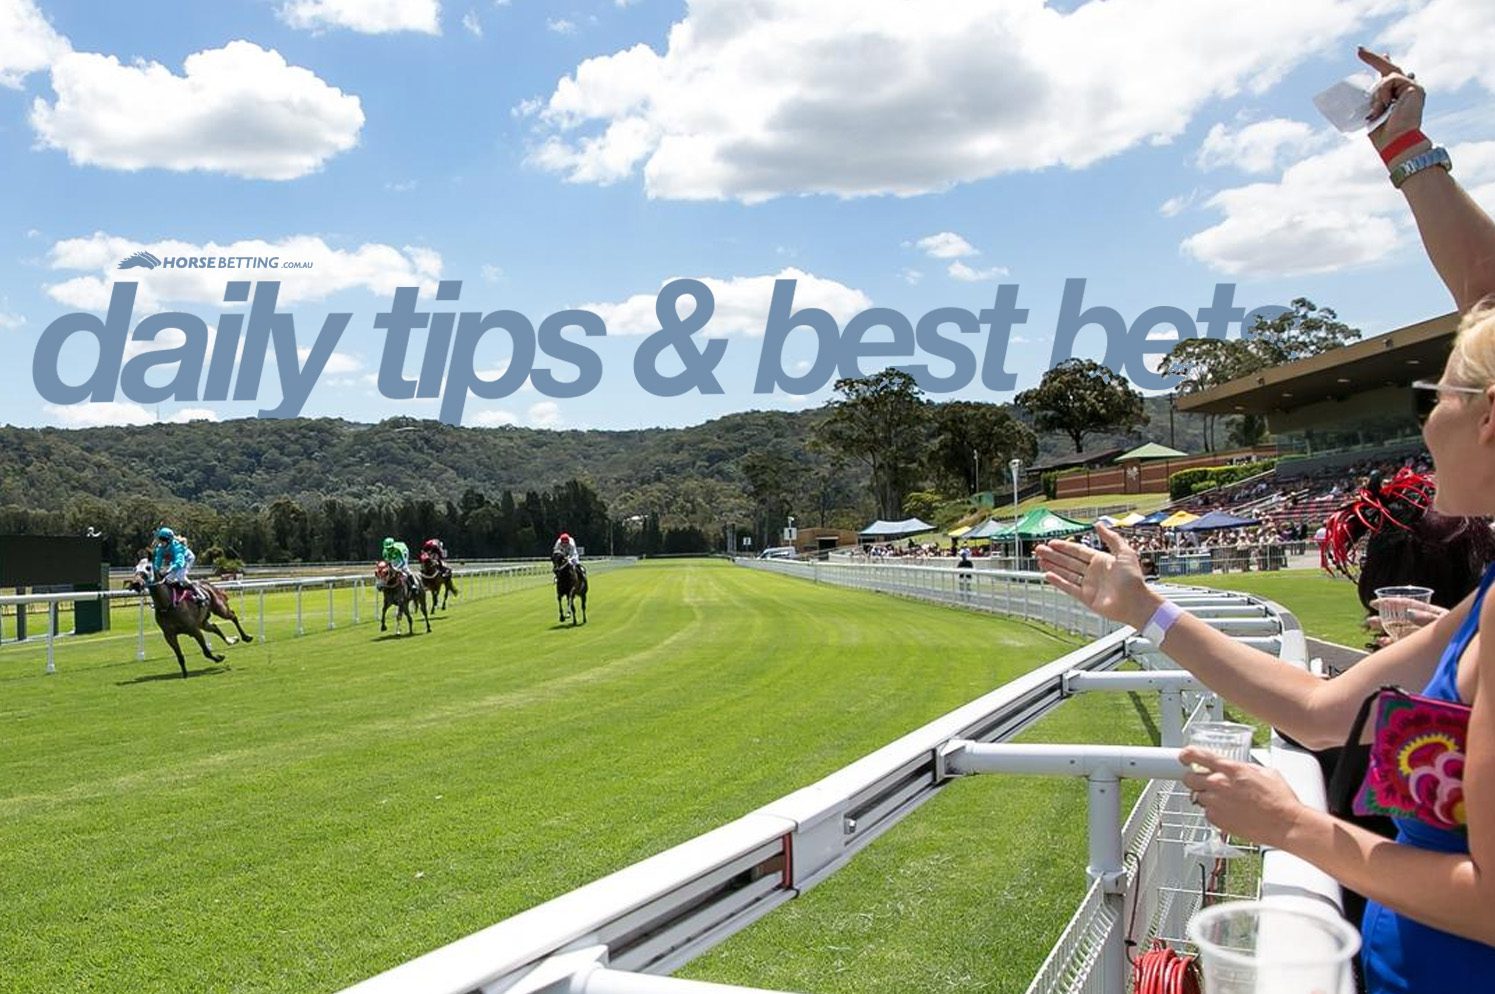 Thrursday horse racing tips & best bets